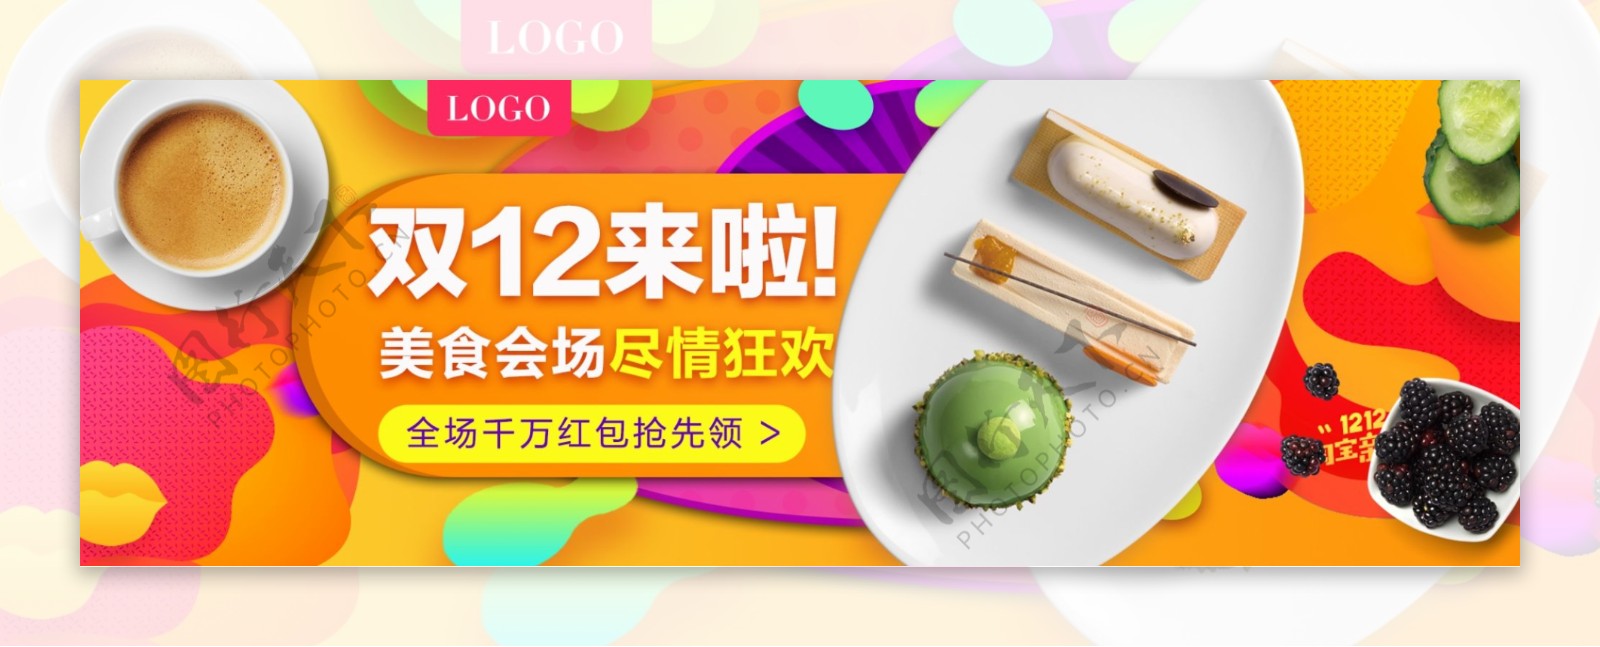 双十二炫彩双12风格糕点食品banner海报